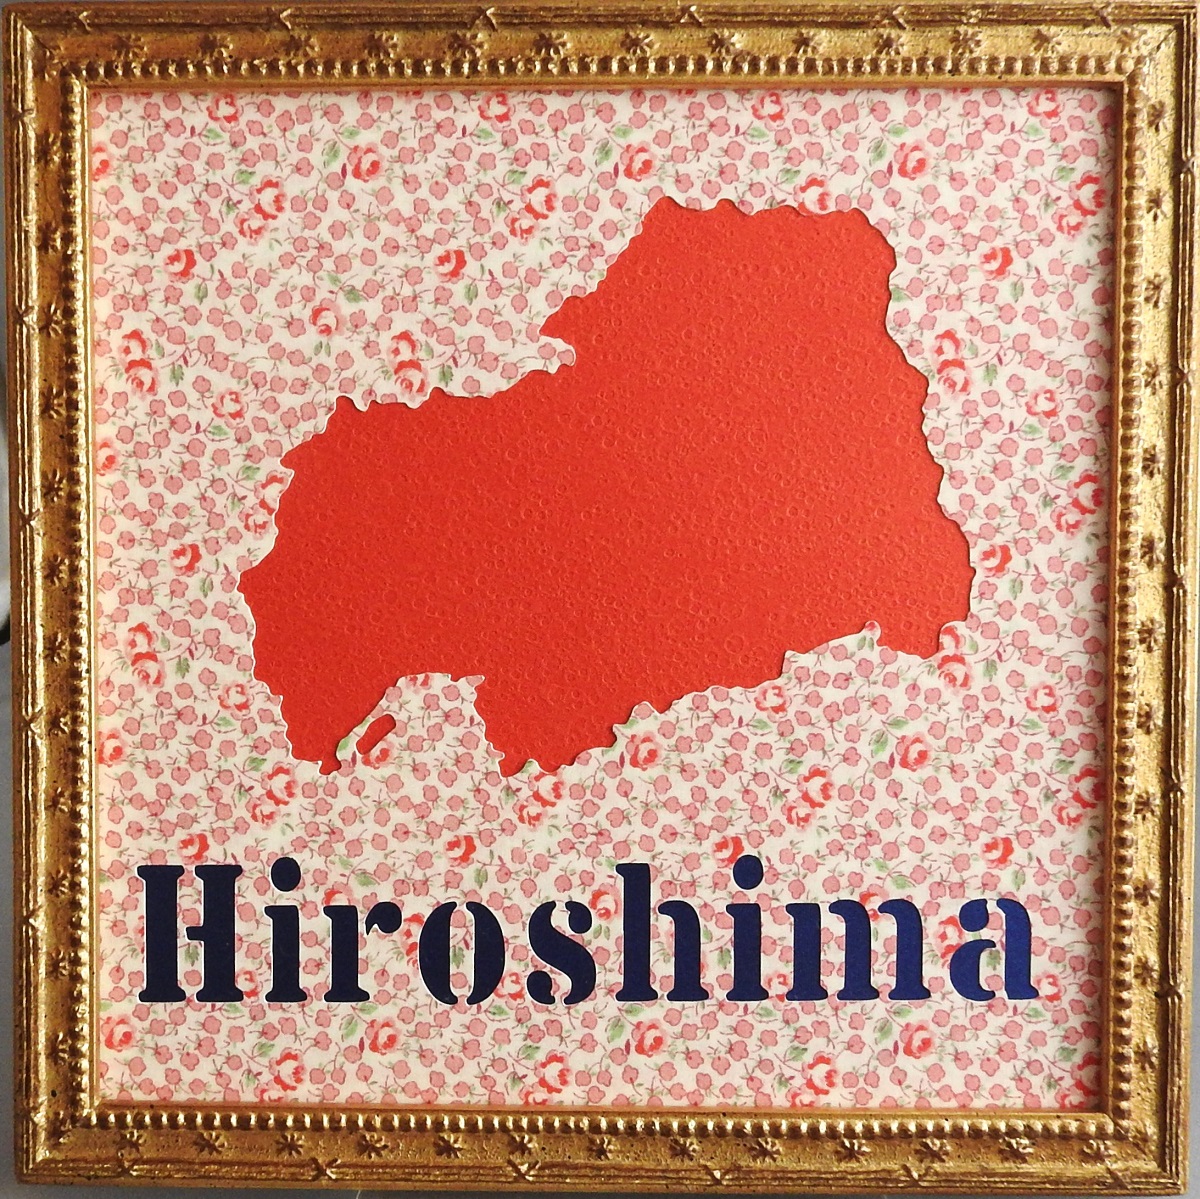 高級ブランド 工芸品 民芸品 レモンの収穫量日本一 広島県をモチーフにした壁飾りです 2mmの正方形です 福山市のバラと広島カープの赤をイメージしました Dgb Gov Bf